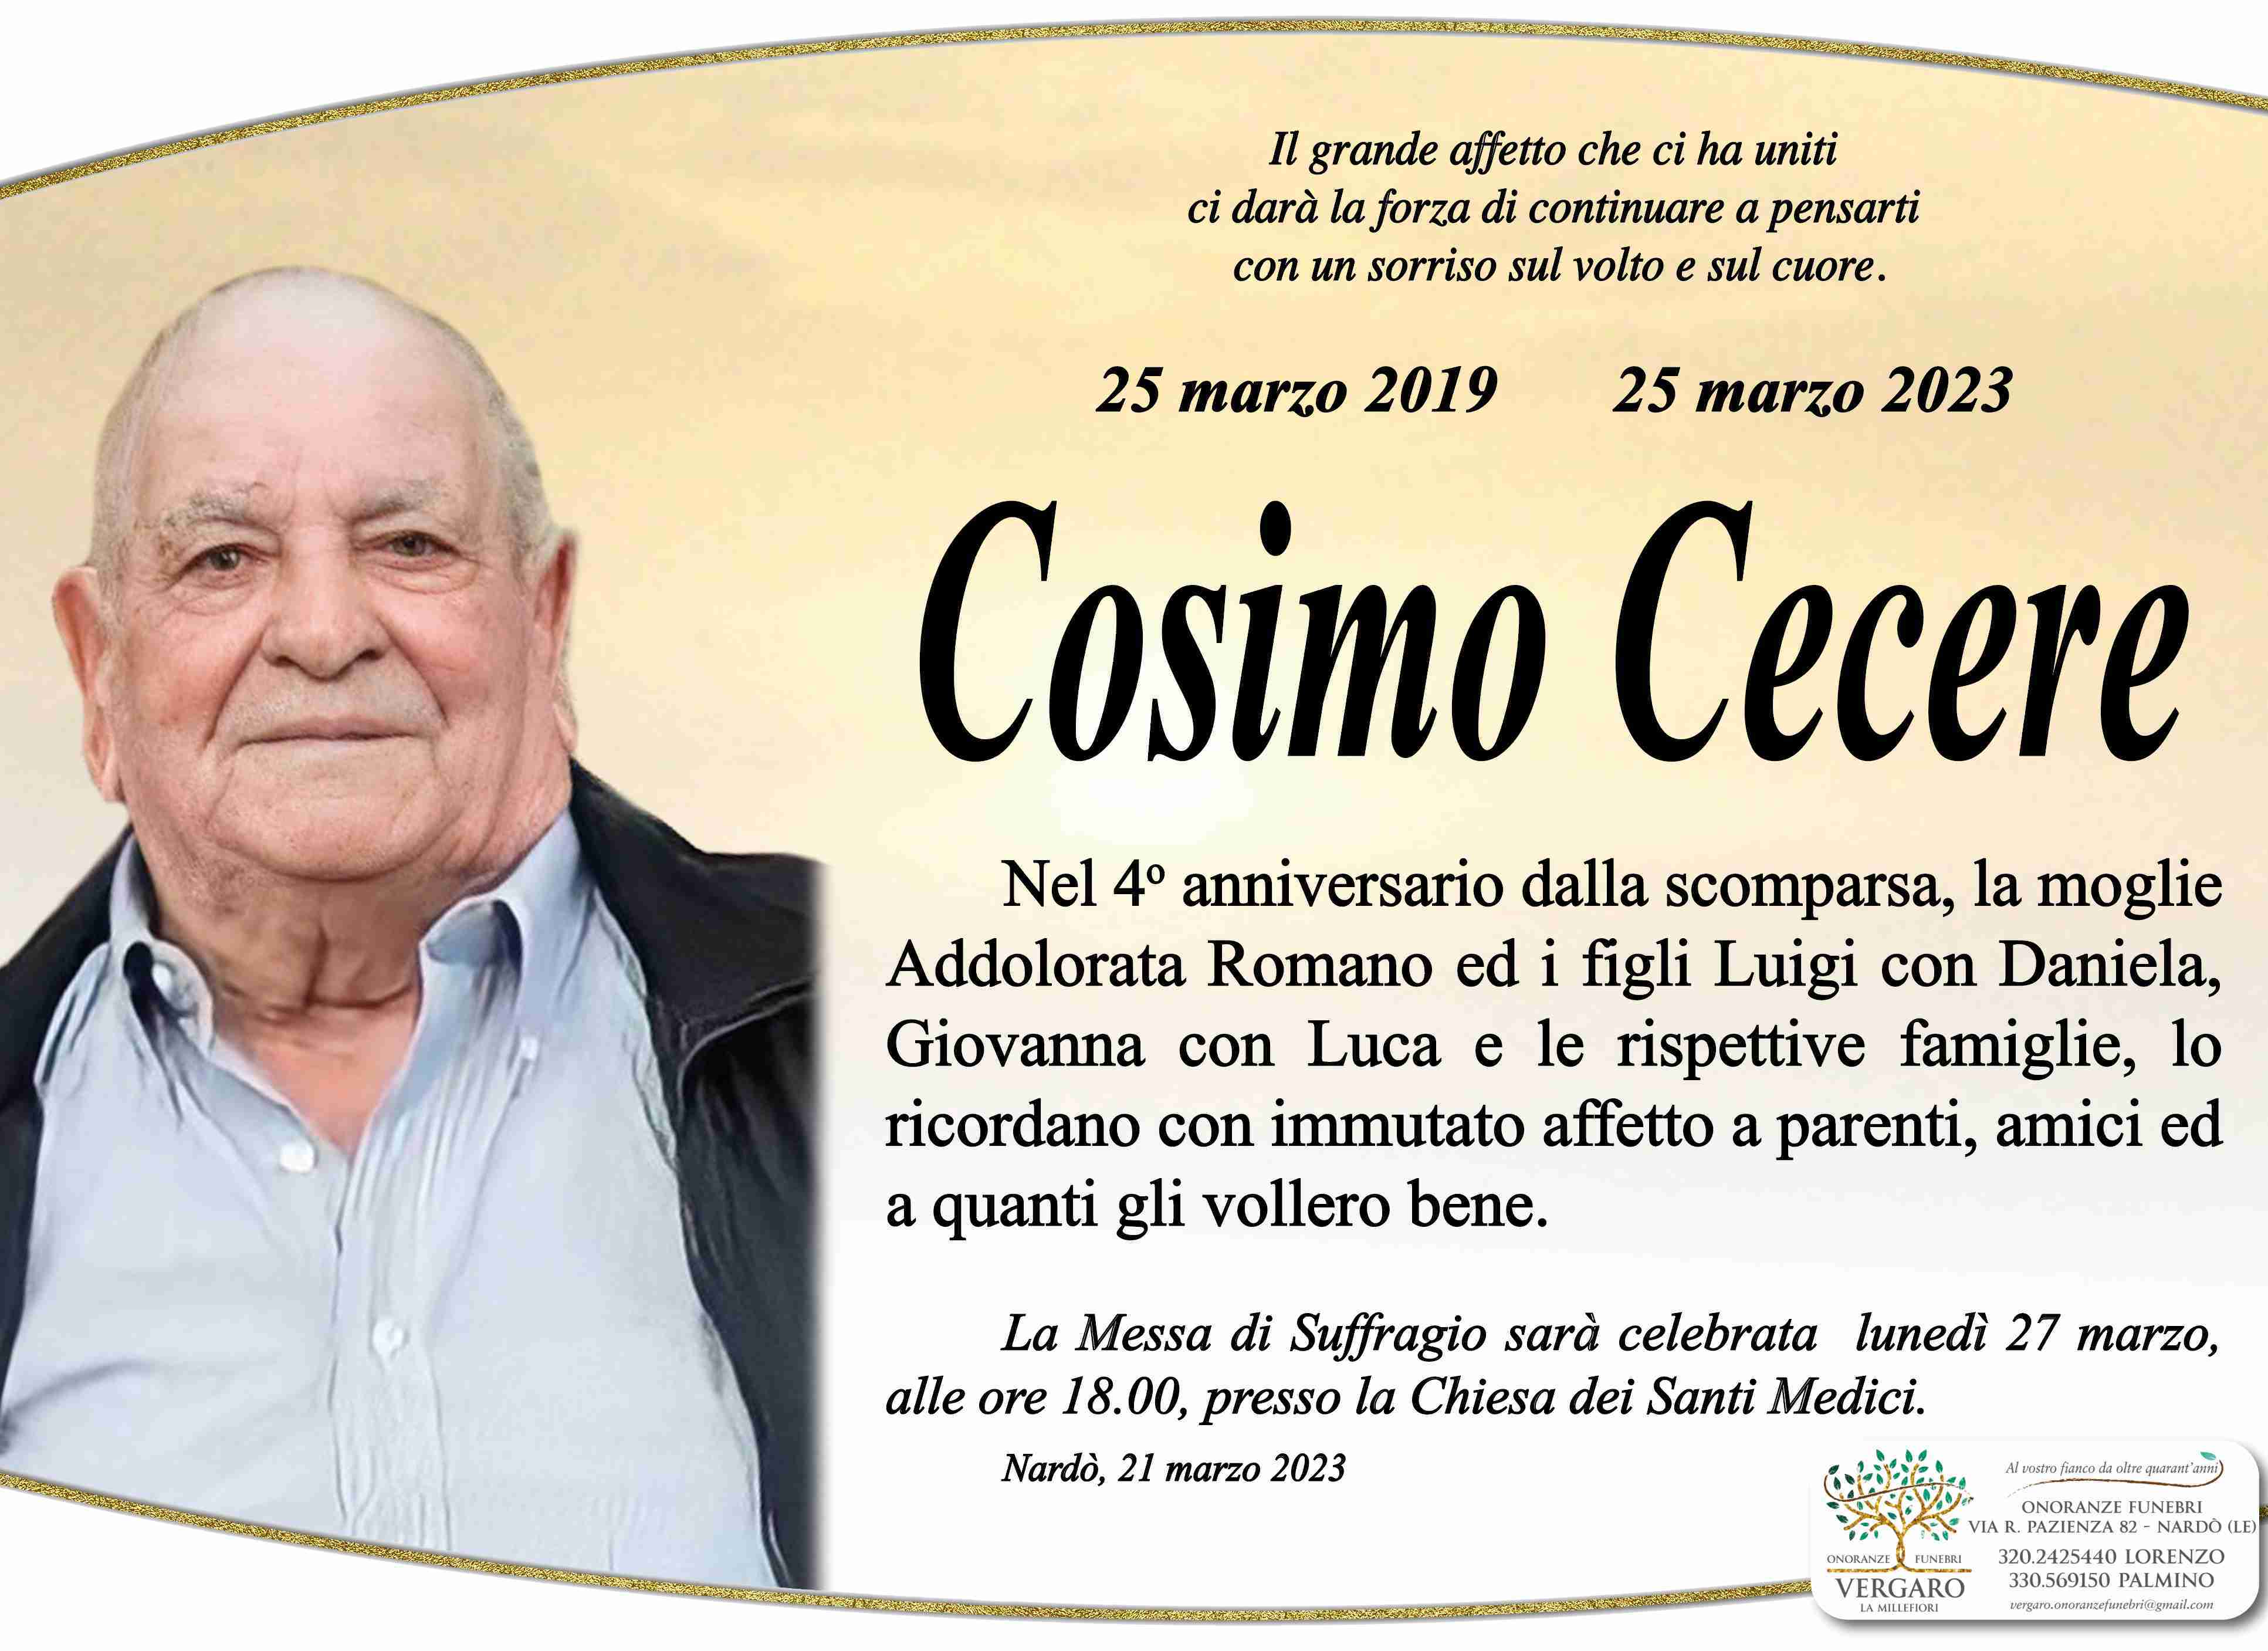 Cosimo Cecere